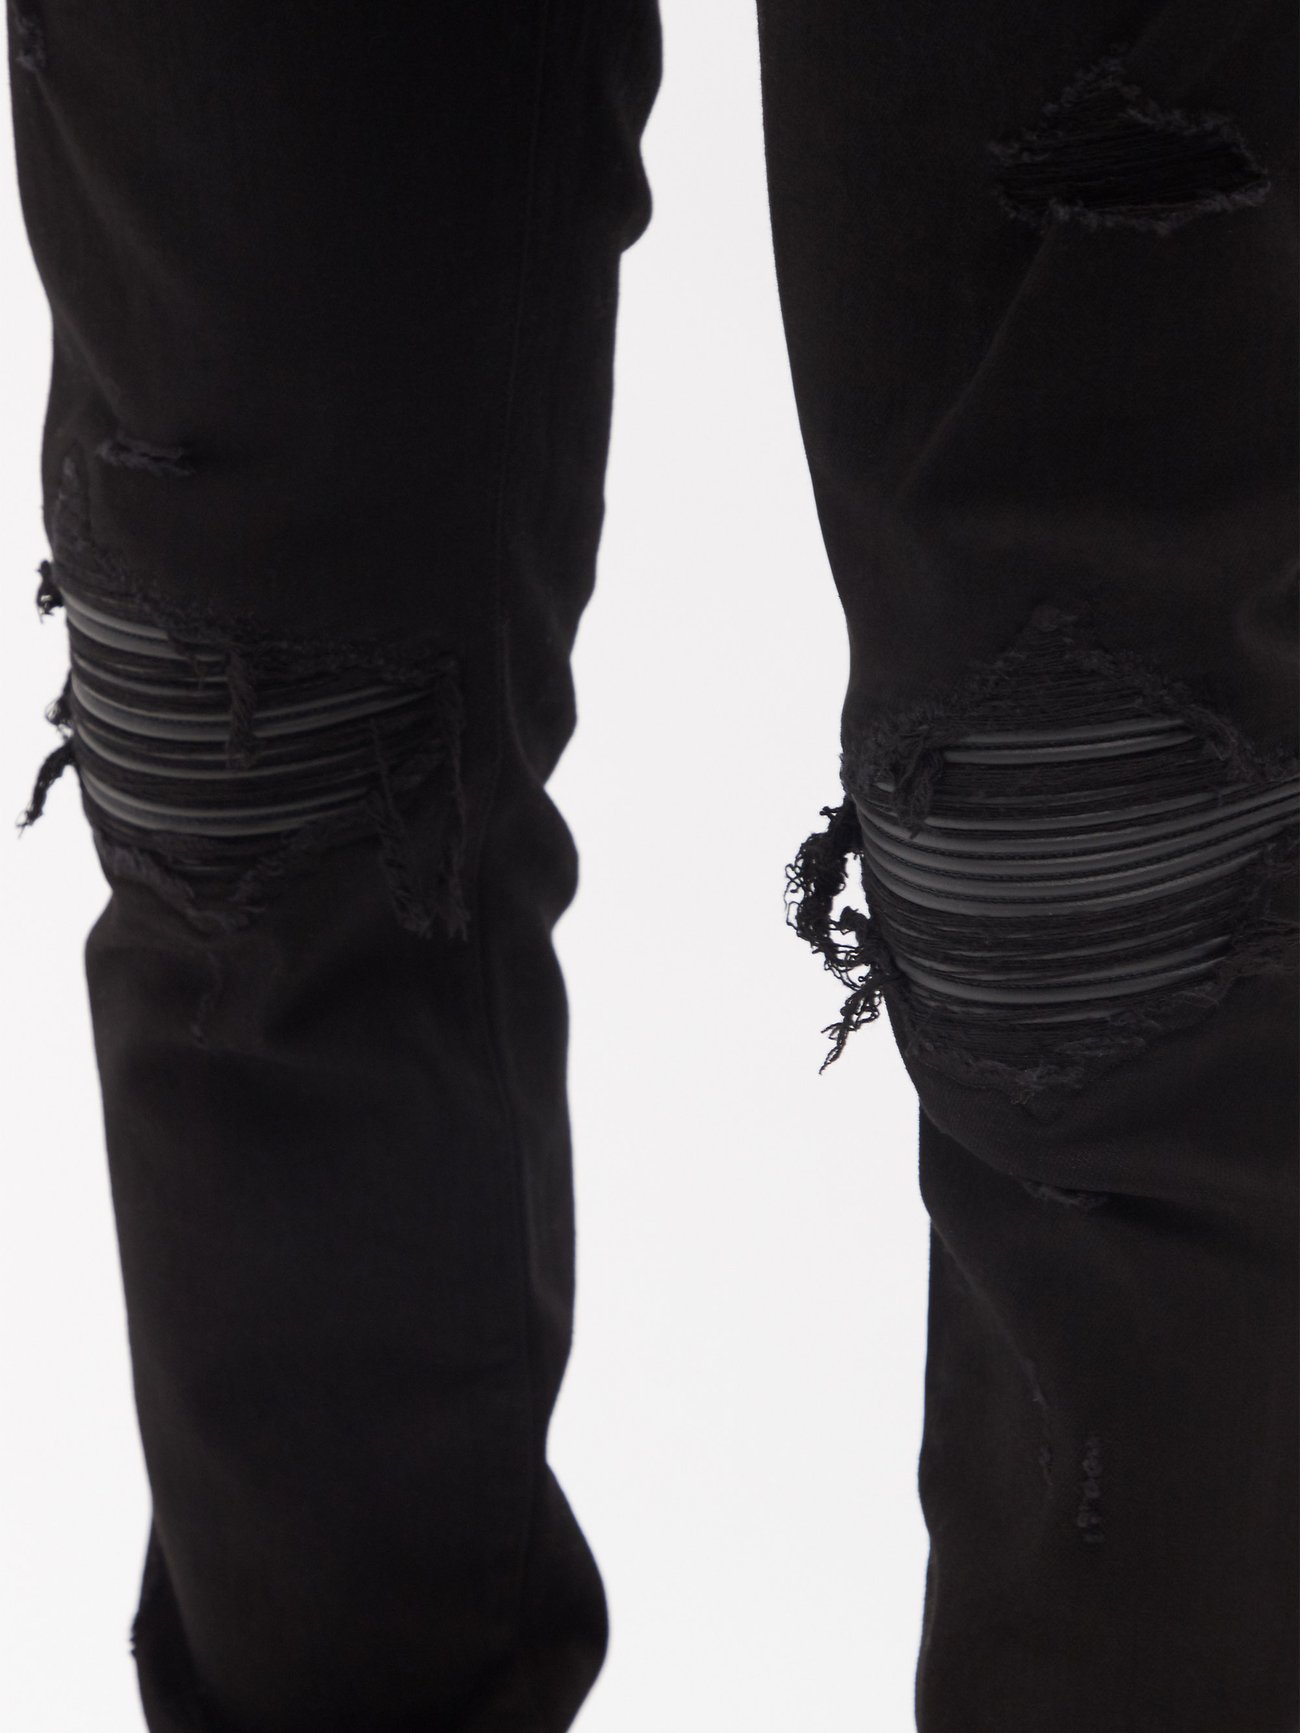 Black MX1 distressed leather-panelled slim-leg jeans, Amiri